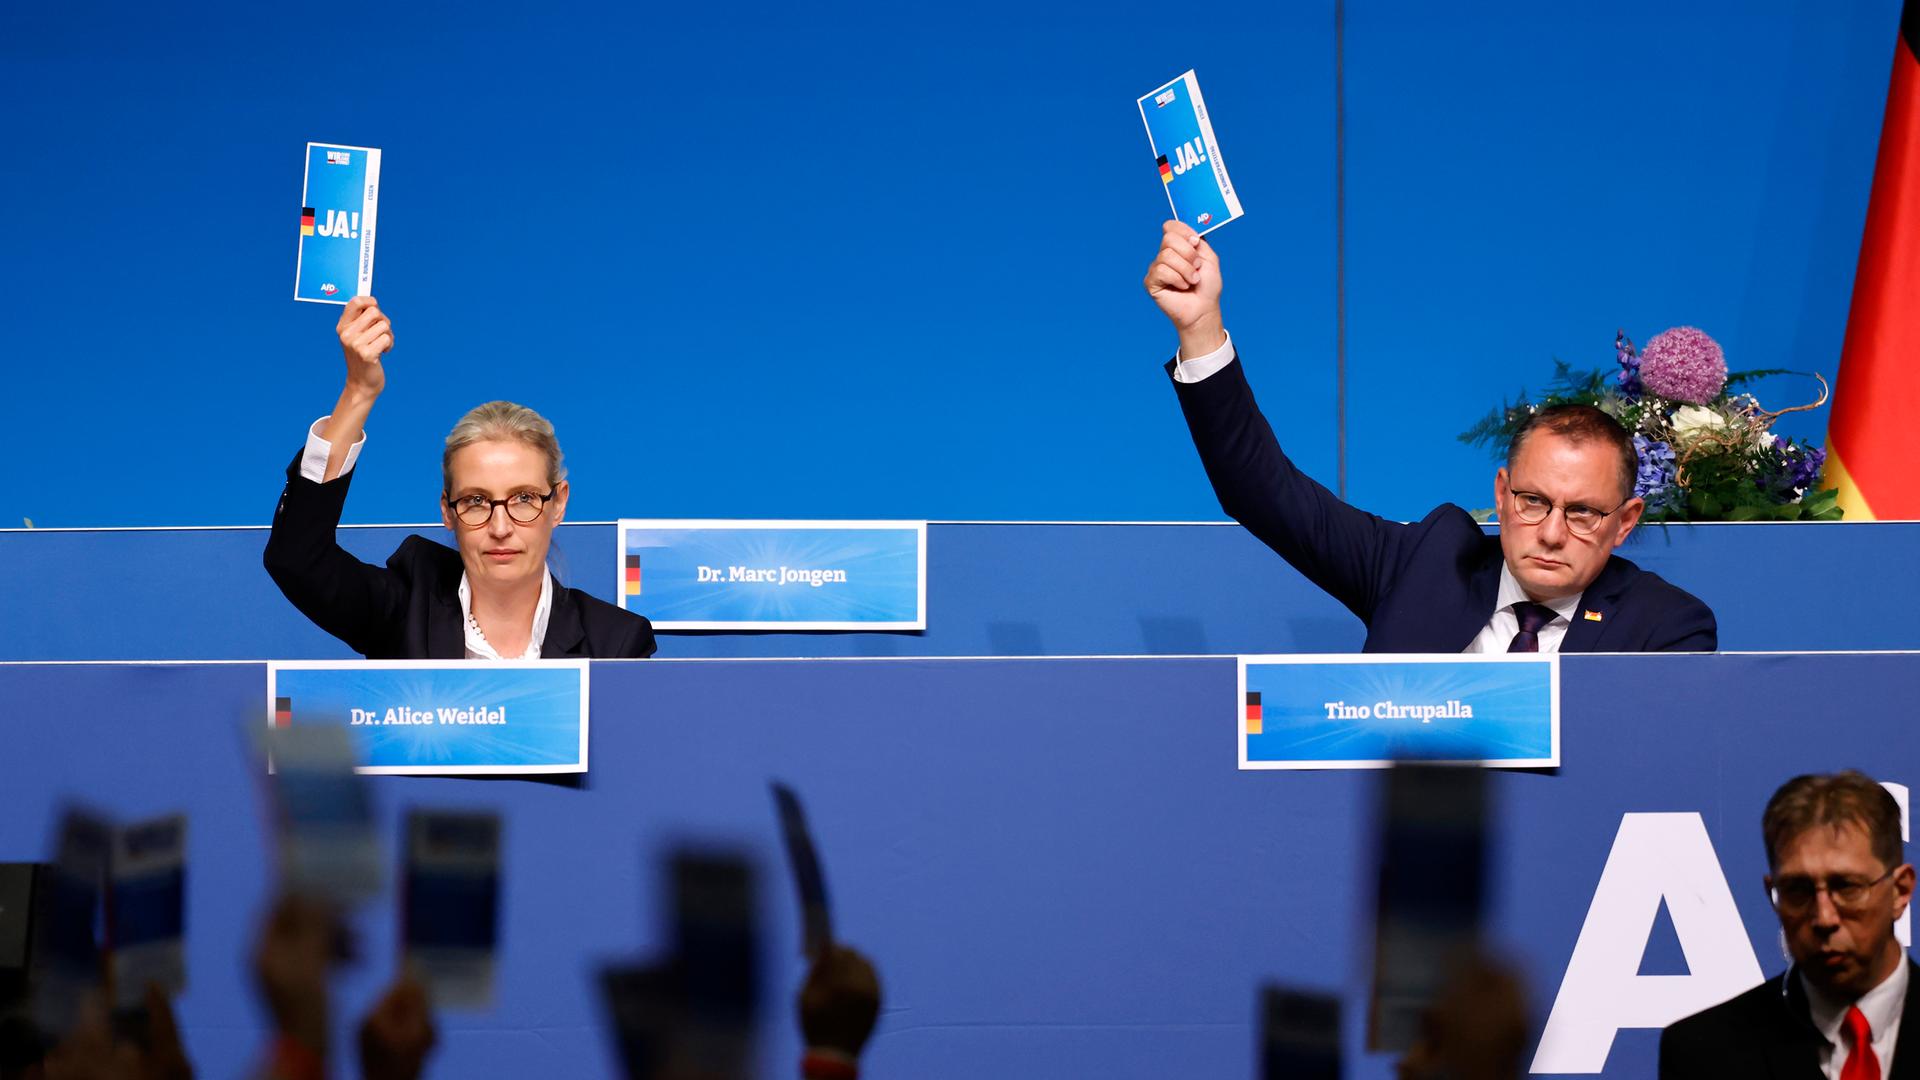 Politikerin Alice Weidel (AfD) und Politiker Tino Chrupalla (AfD) zeigen ihre Stimmkarten auf dem 15. Bundesparteitag der Alternative für Deutschland in der Grugahalle in Essen.